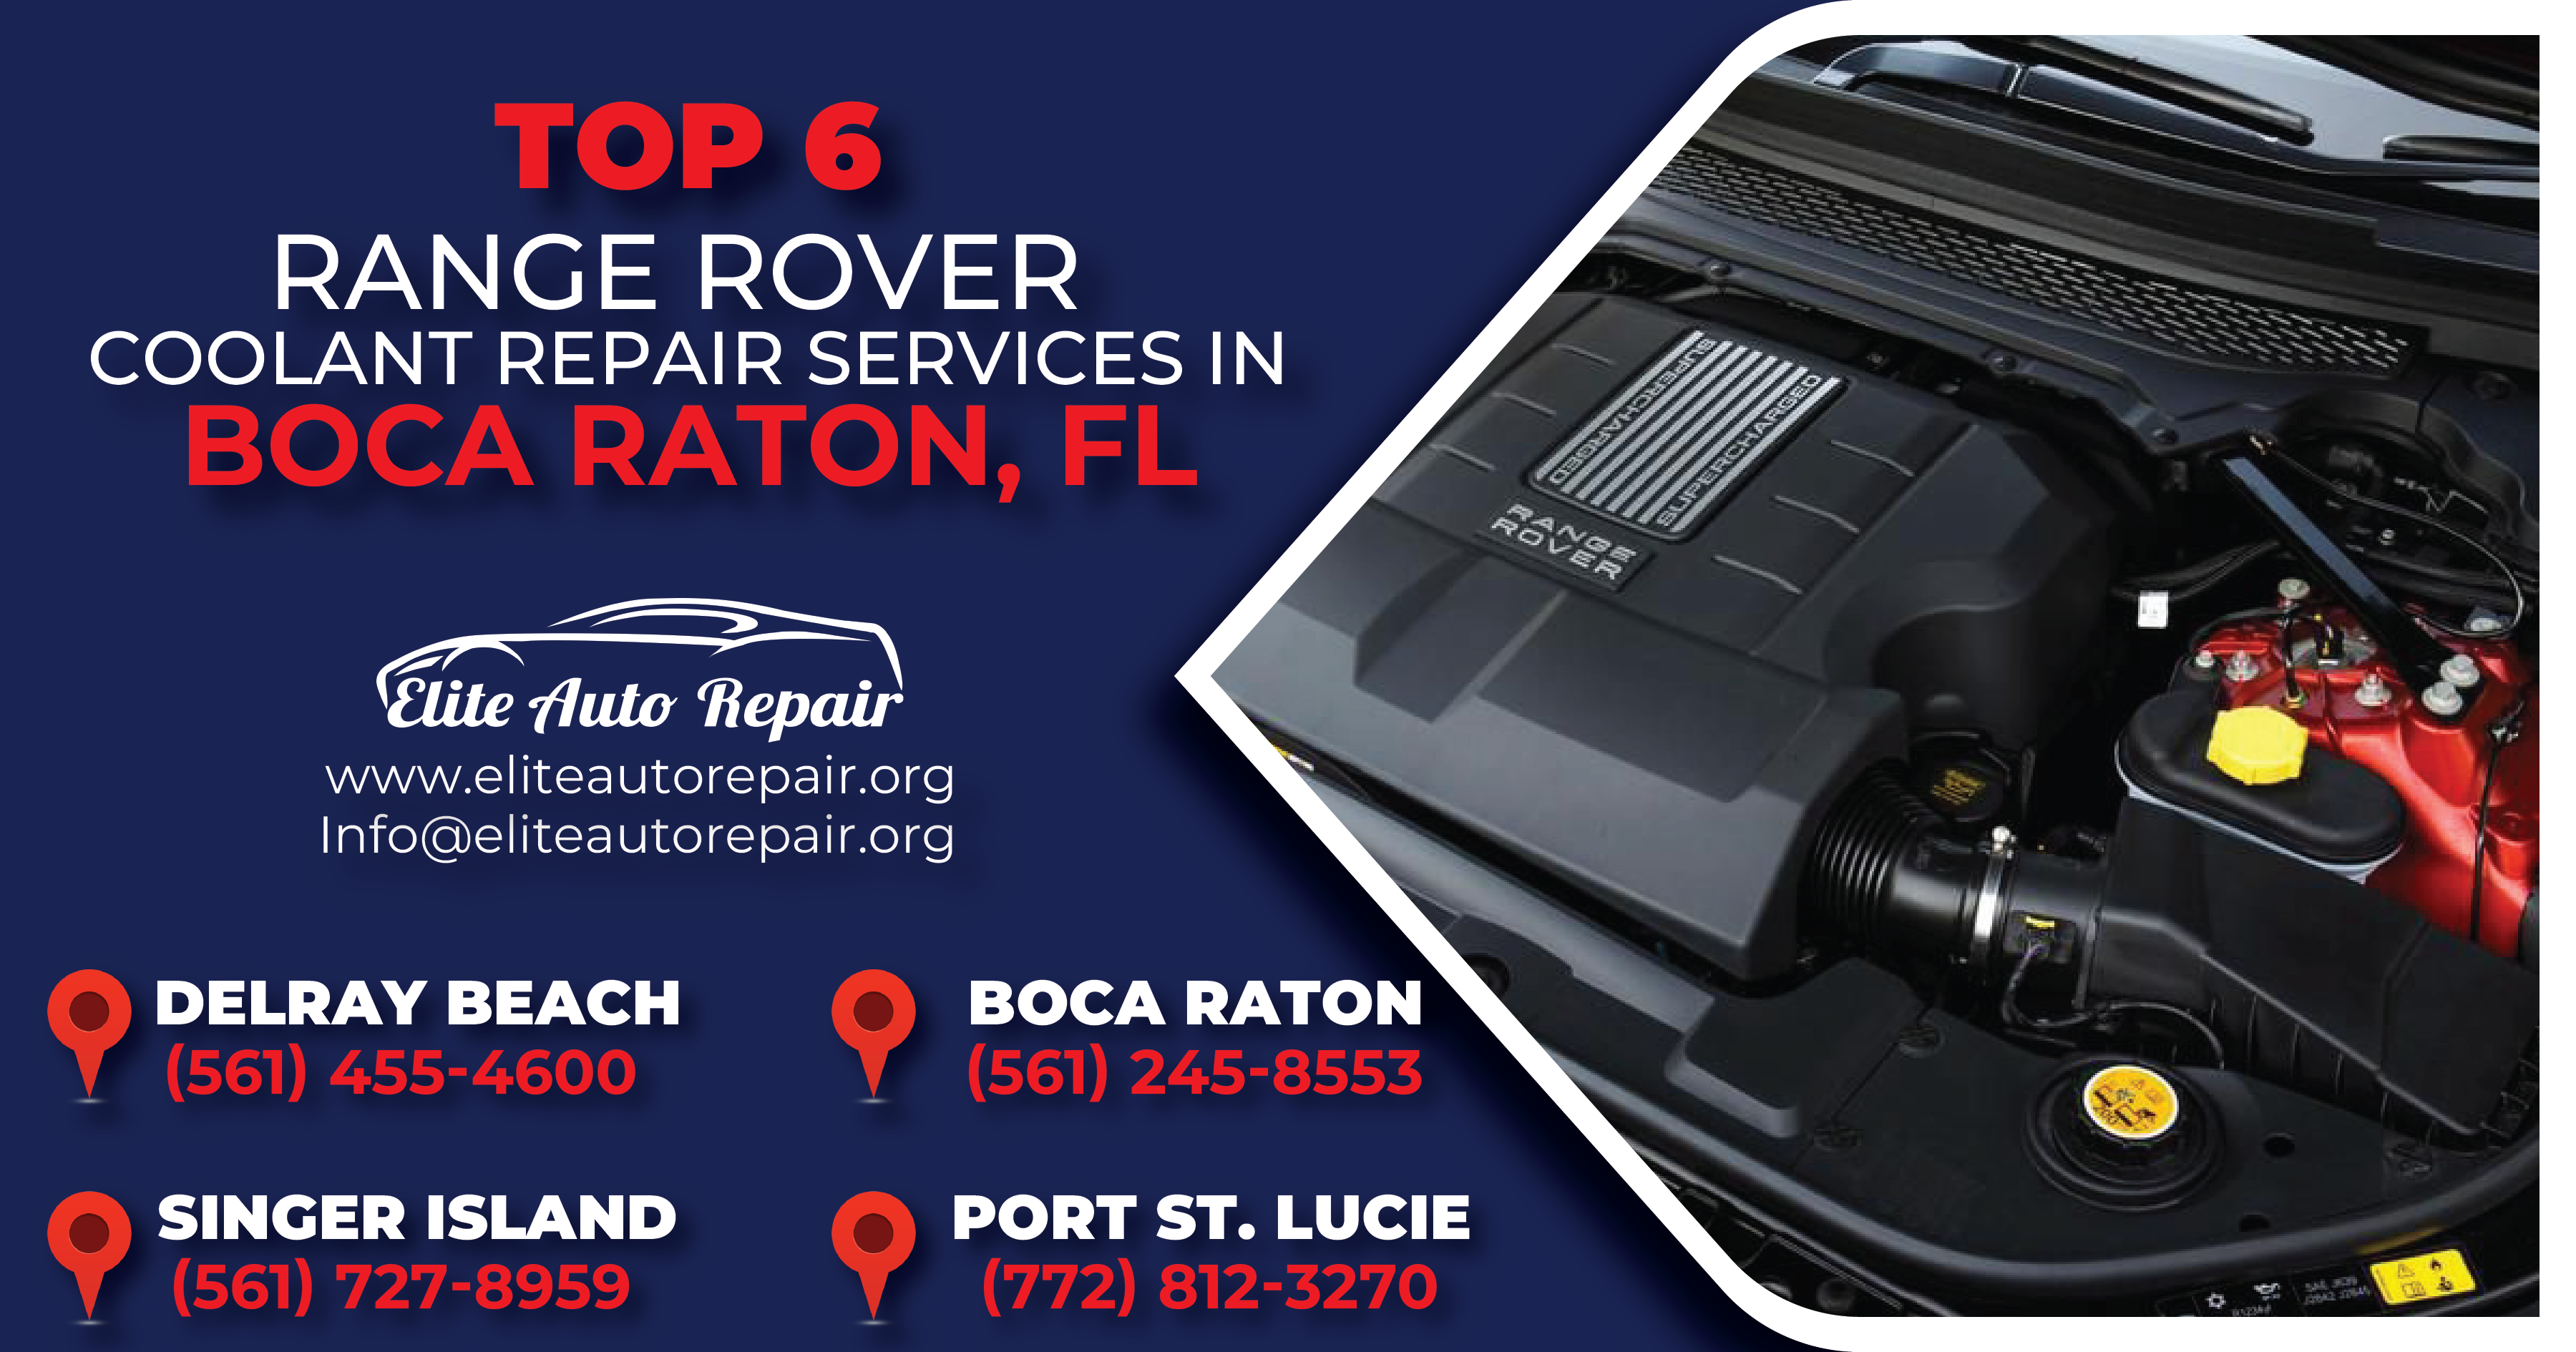 Top 6 Range Rover Coolant Repair Services in Boca Raton, FL